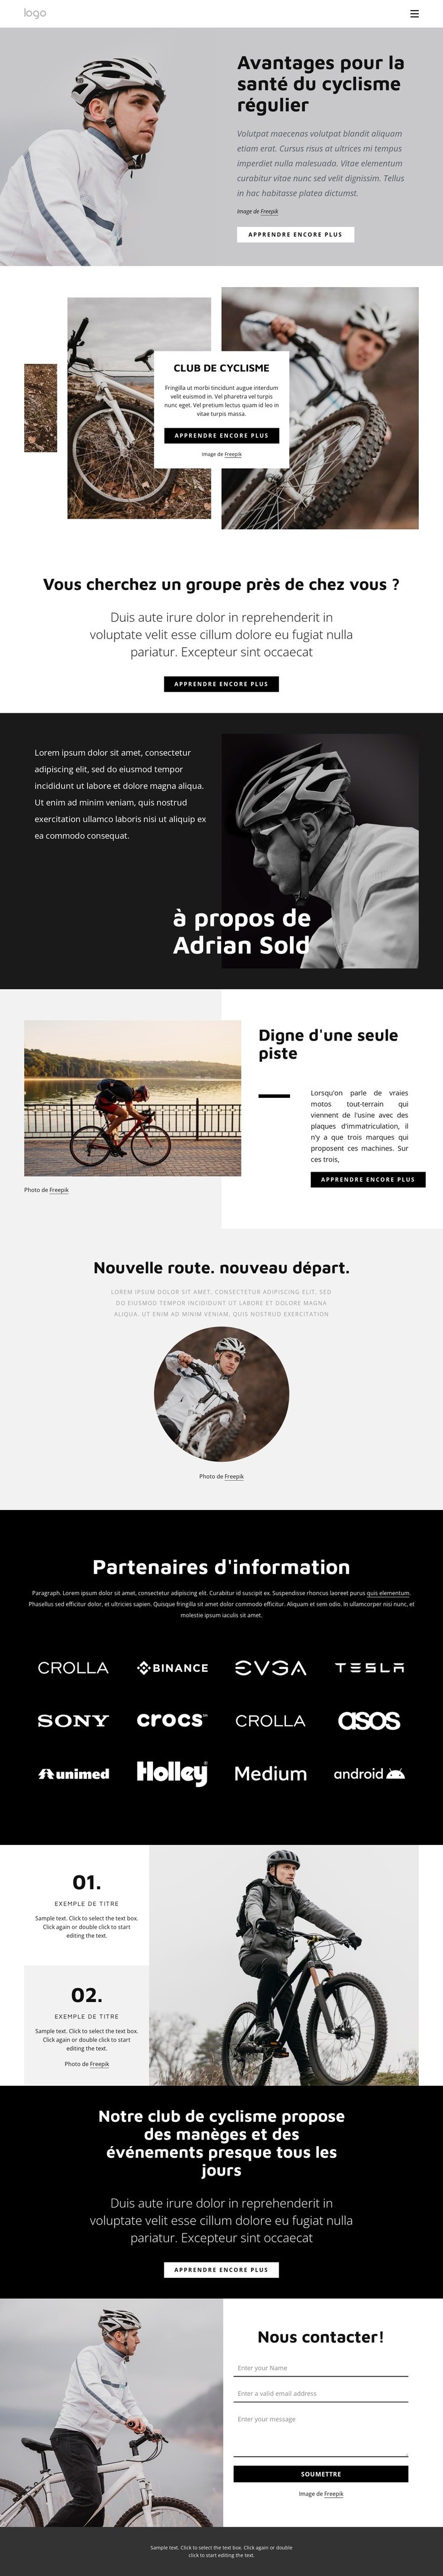 Avantages du cyclisme régulier Maquette de site Web